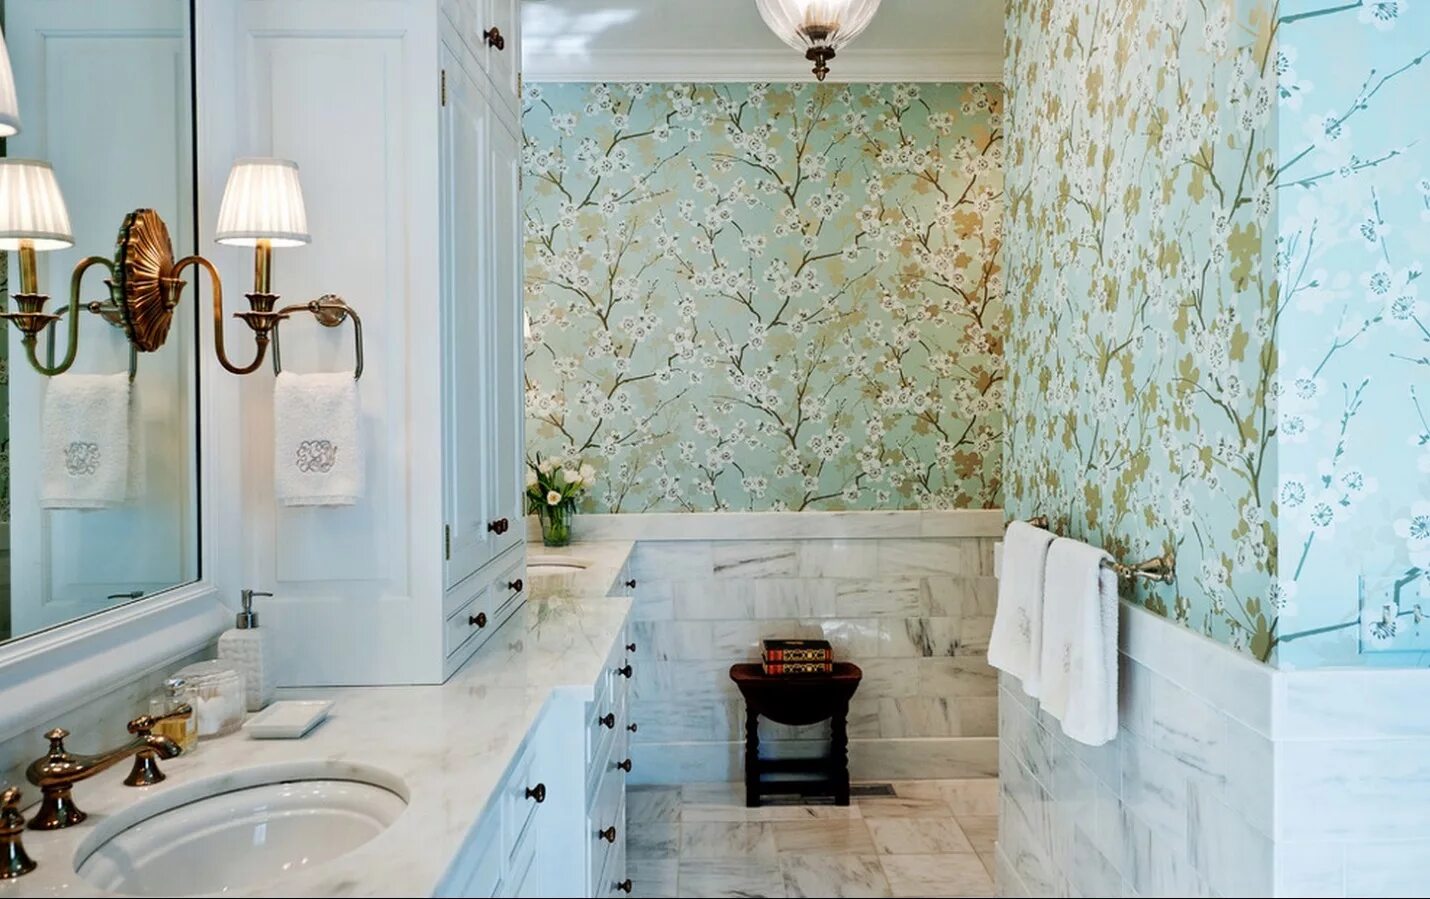 Отделка стен в ванной комнате. Интерьер ванной комнаты. Ванная комната с растениями. Обои в интерьере ванной комнаты. Стены в ванной комнате варианты